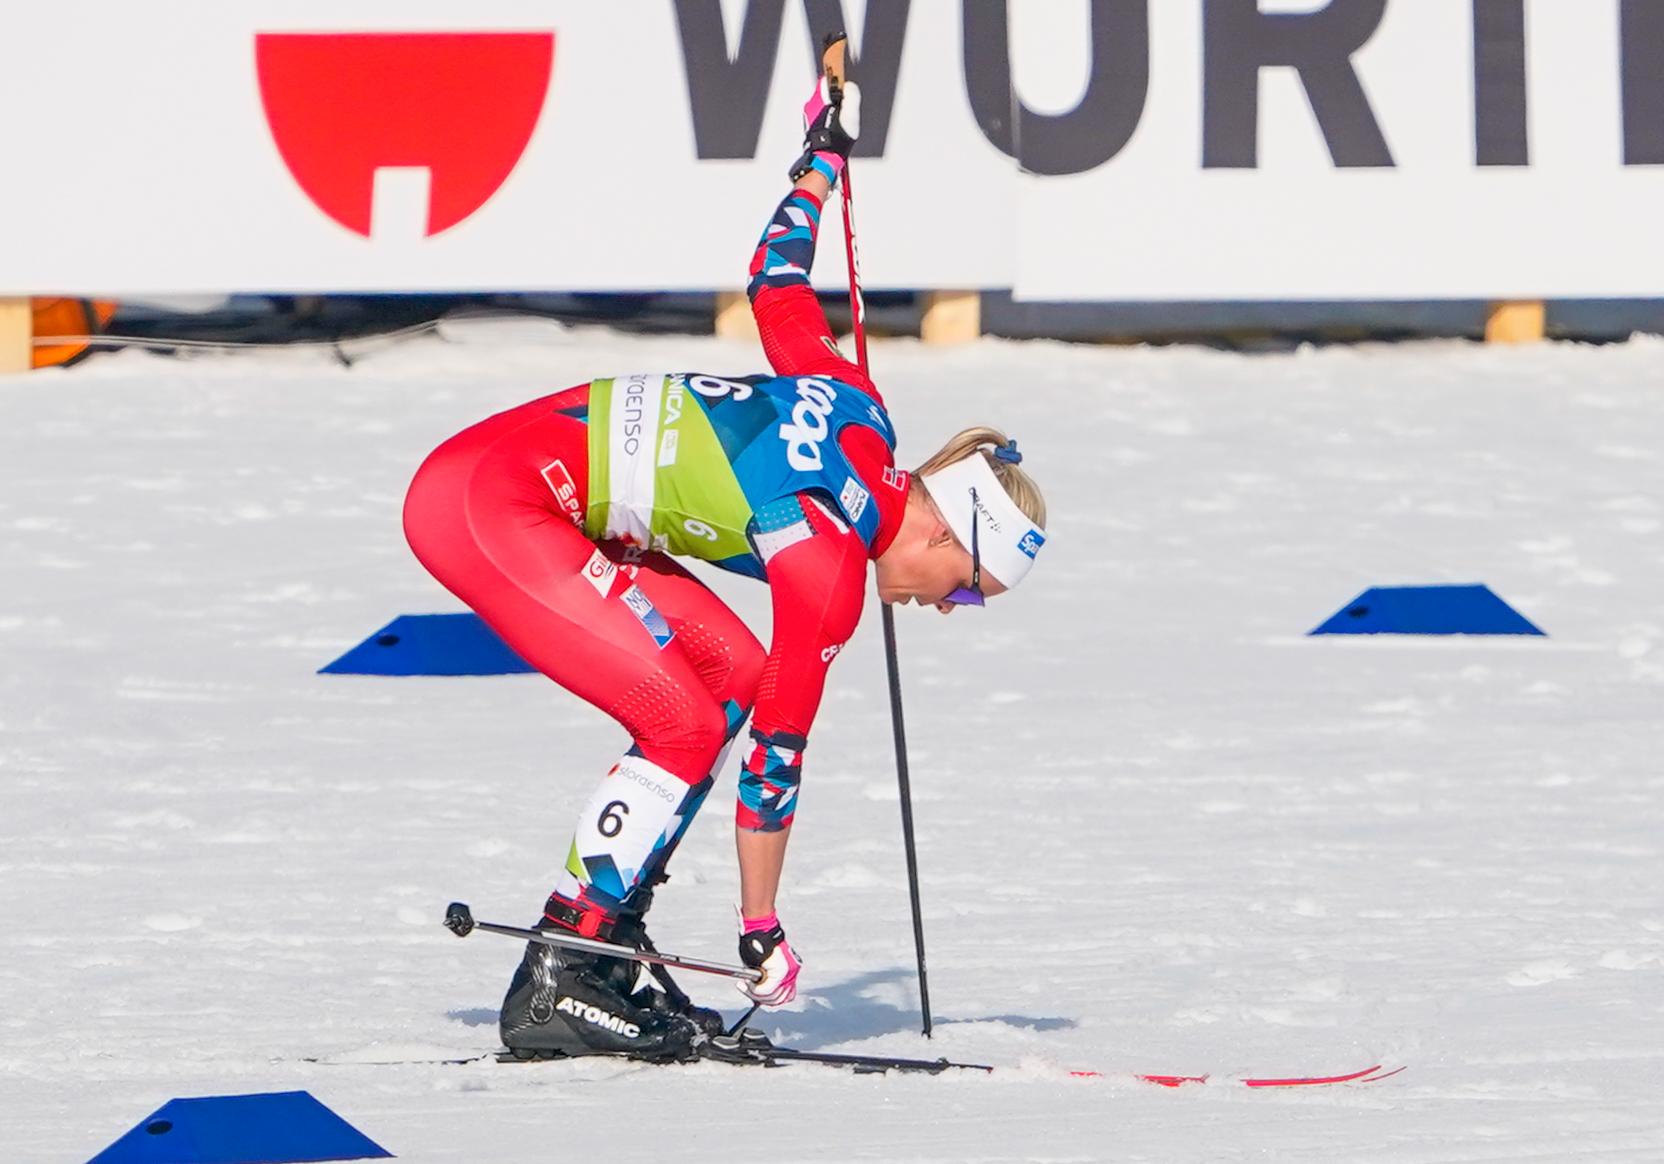 TRØBBEL: Mens de andre utøverne setter ut i løypa, sliter Anne Kjersti Kalvå med å få satt bindingene i skien på lørdagens 15 kilometer med skibytte.